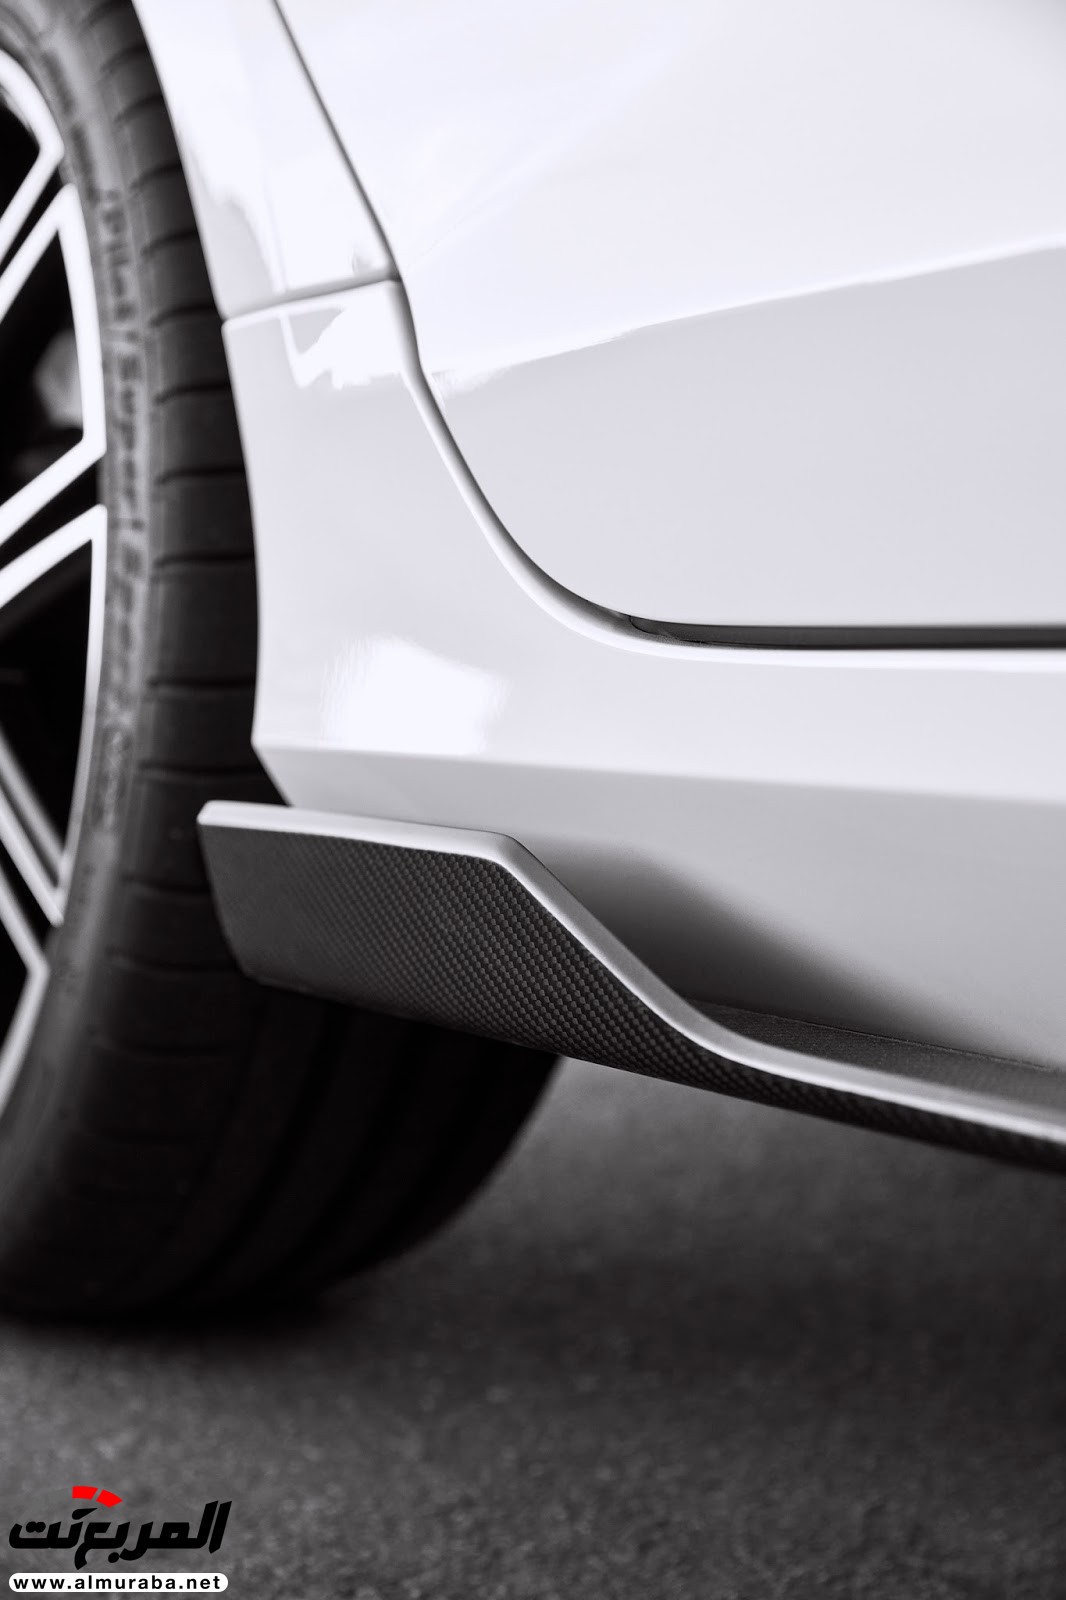 رسميًا: فولفو تنفصل عن بوليستر المصنعة لسياراتها للأداء العالي 9